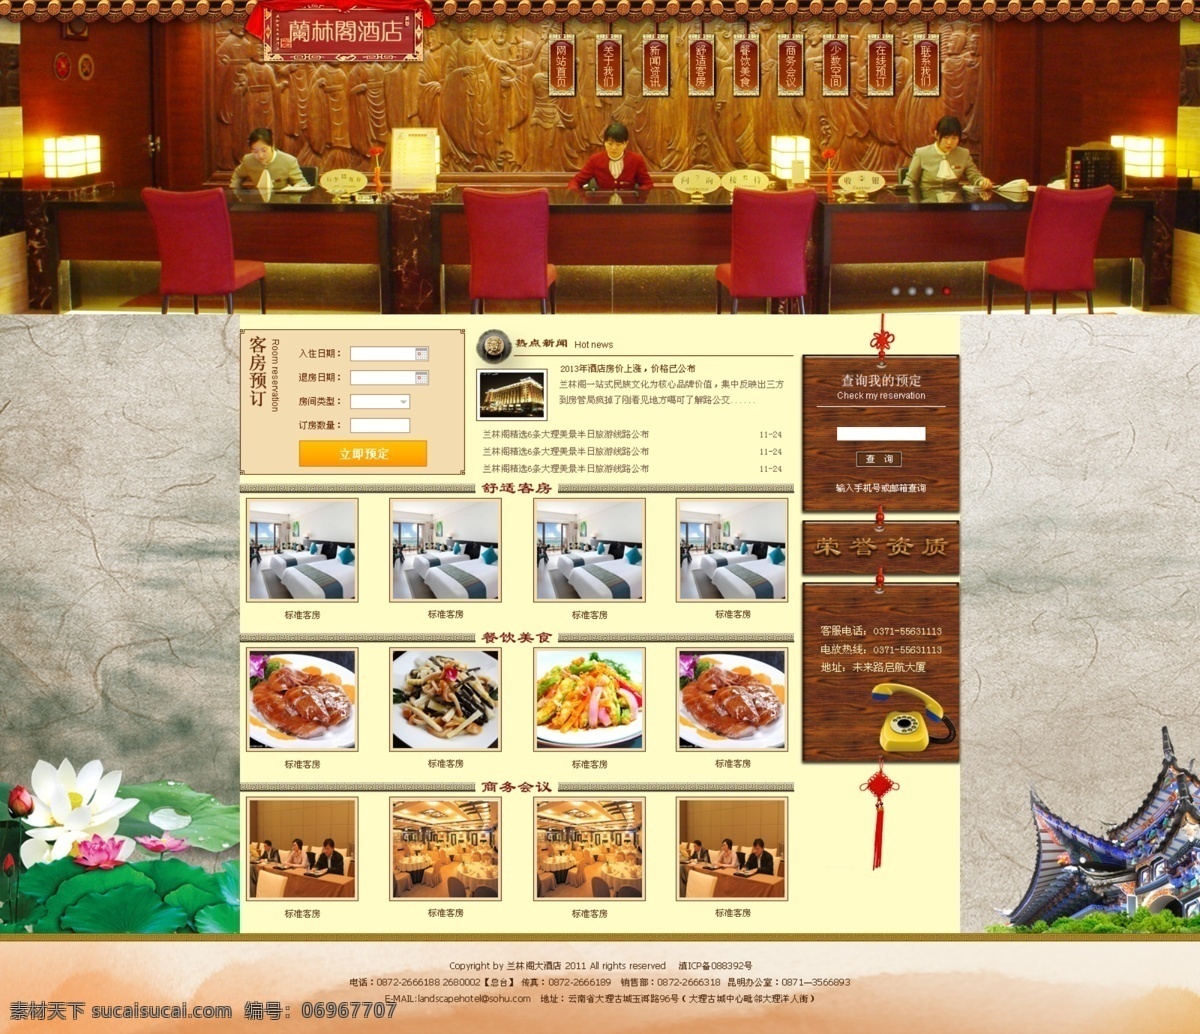 酒店 网站 酒店网页 酒店网站 模板下载 企业站 网页模板 网页设计 源文件 中文模板 网页素材